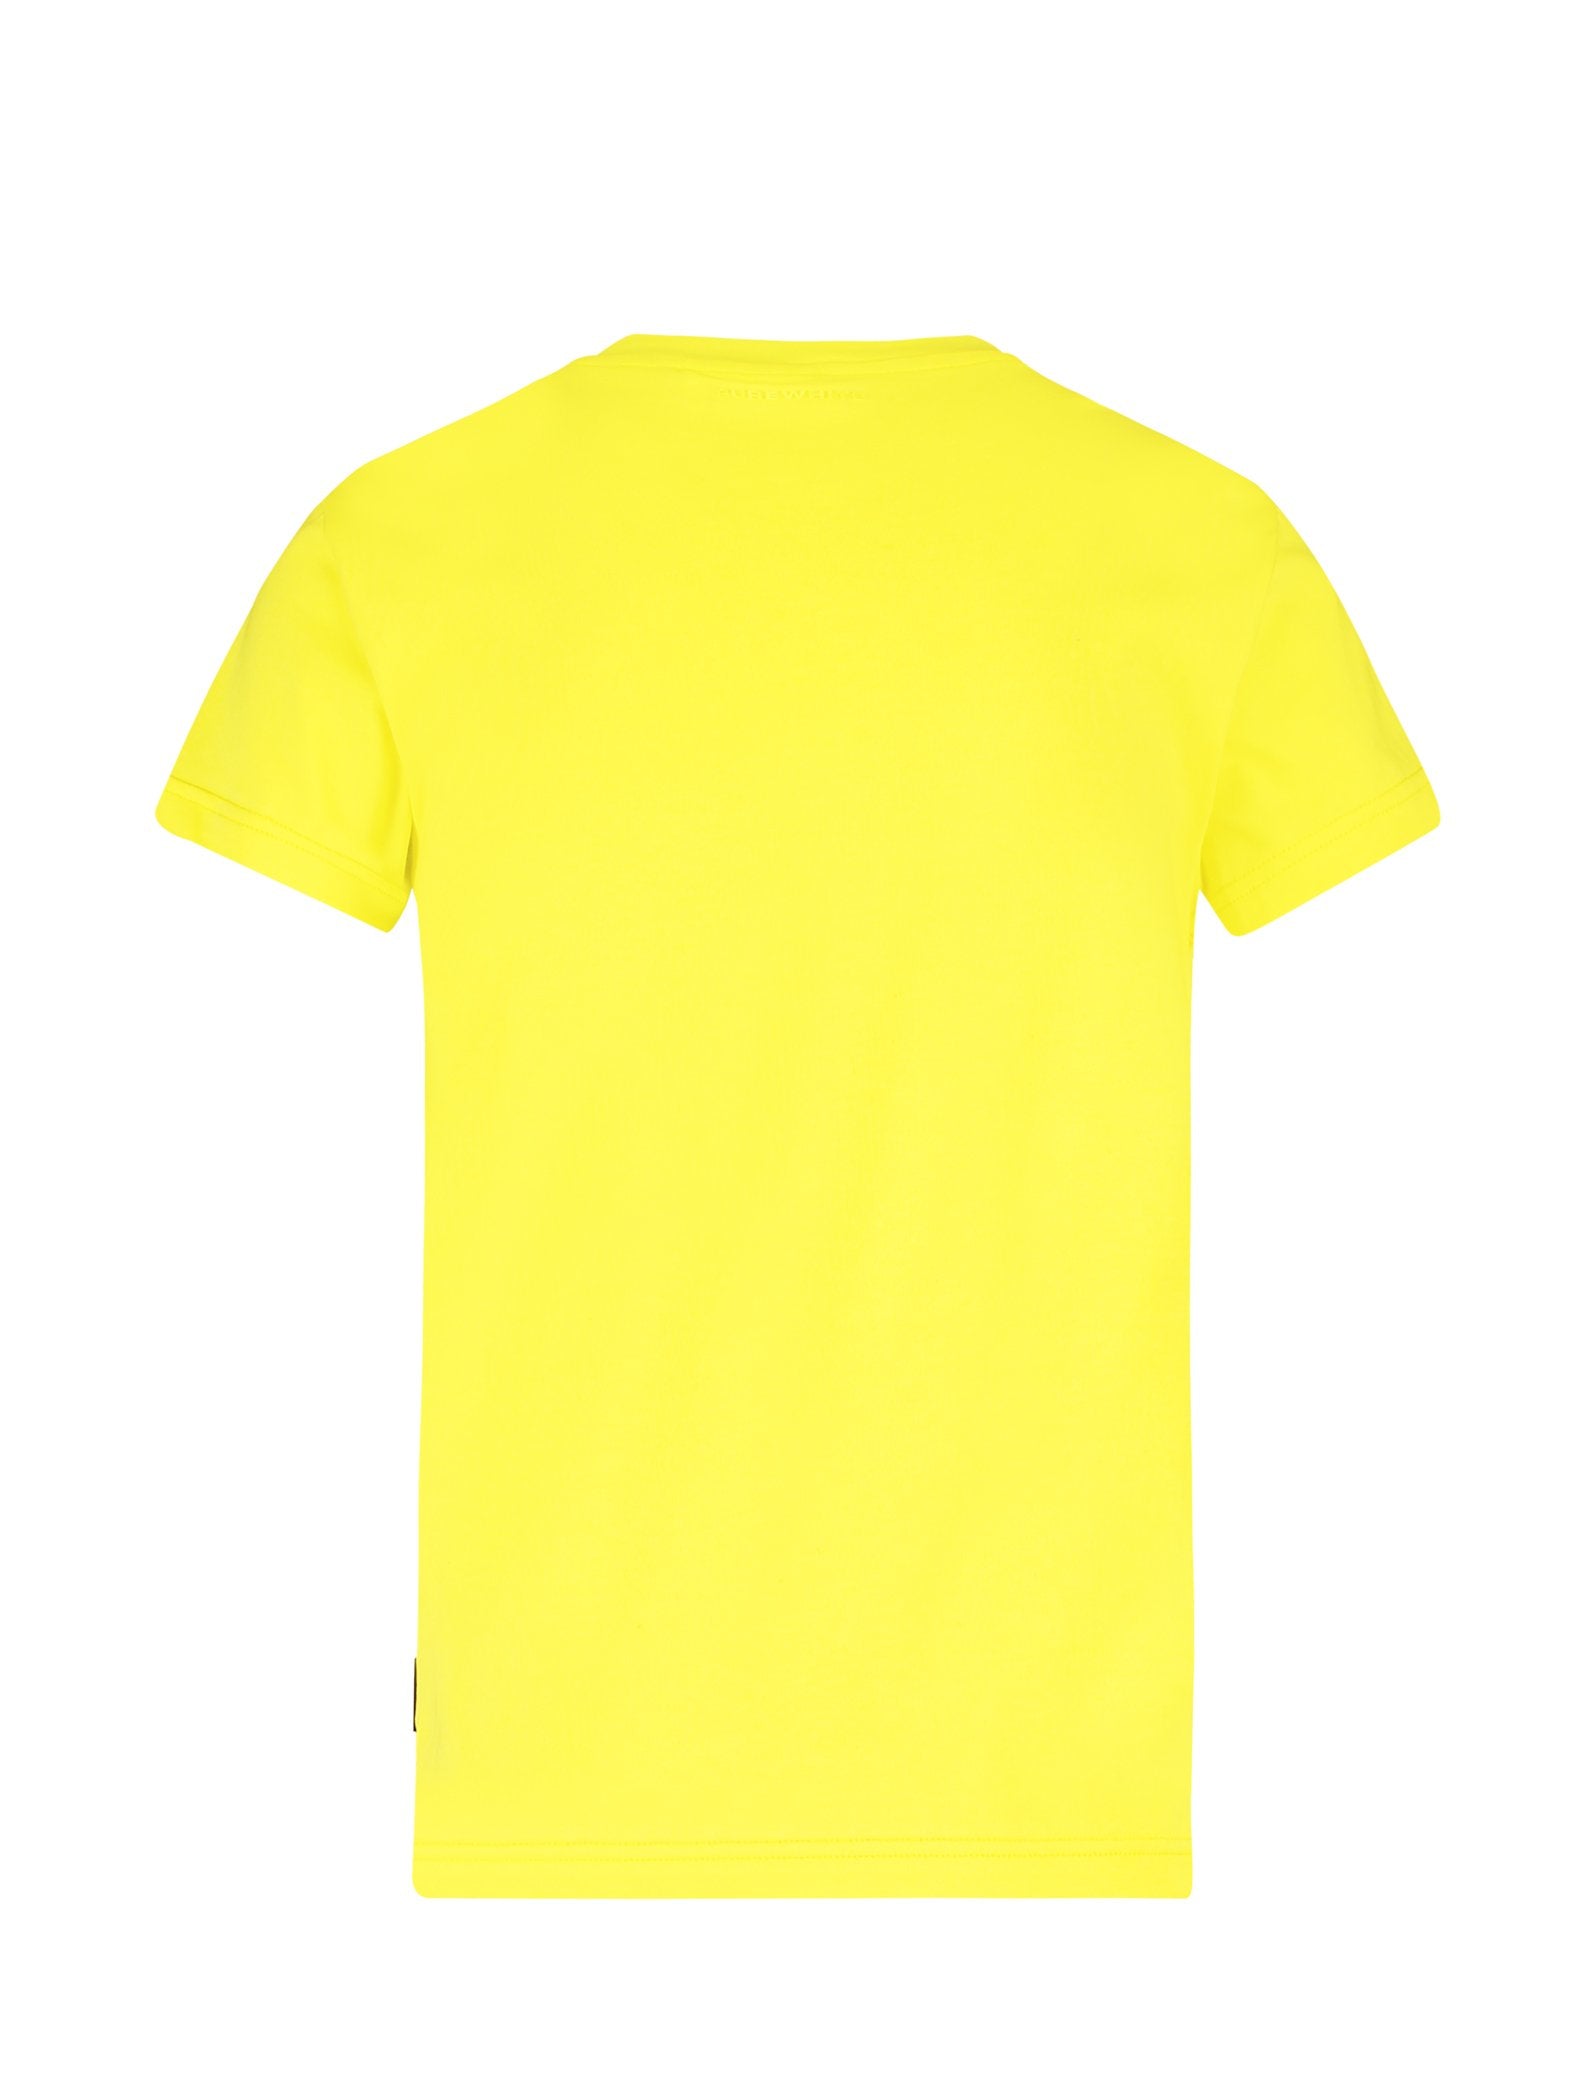 Jongens T-shirt Yellow van Ballin Amsterdam in de kleur Yellow in maat 176.